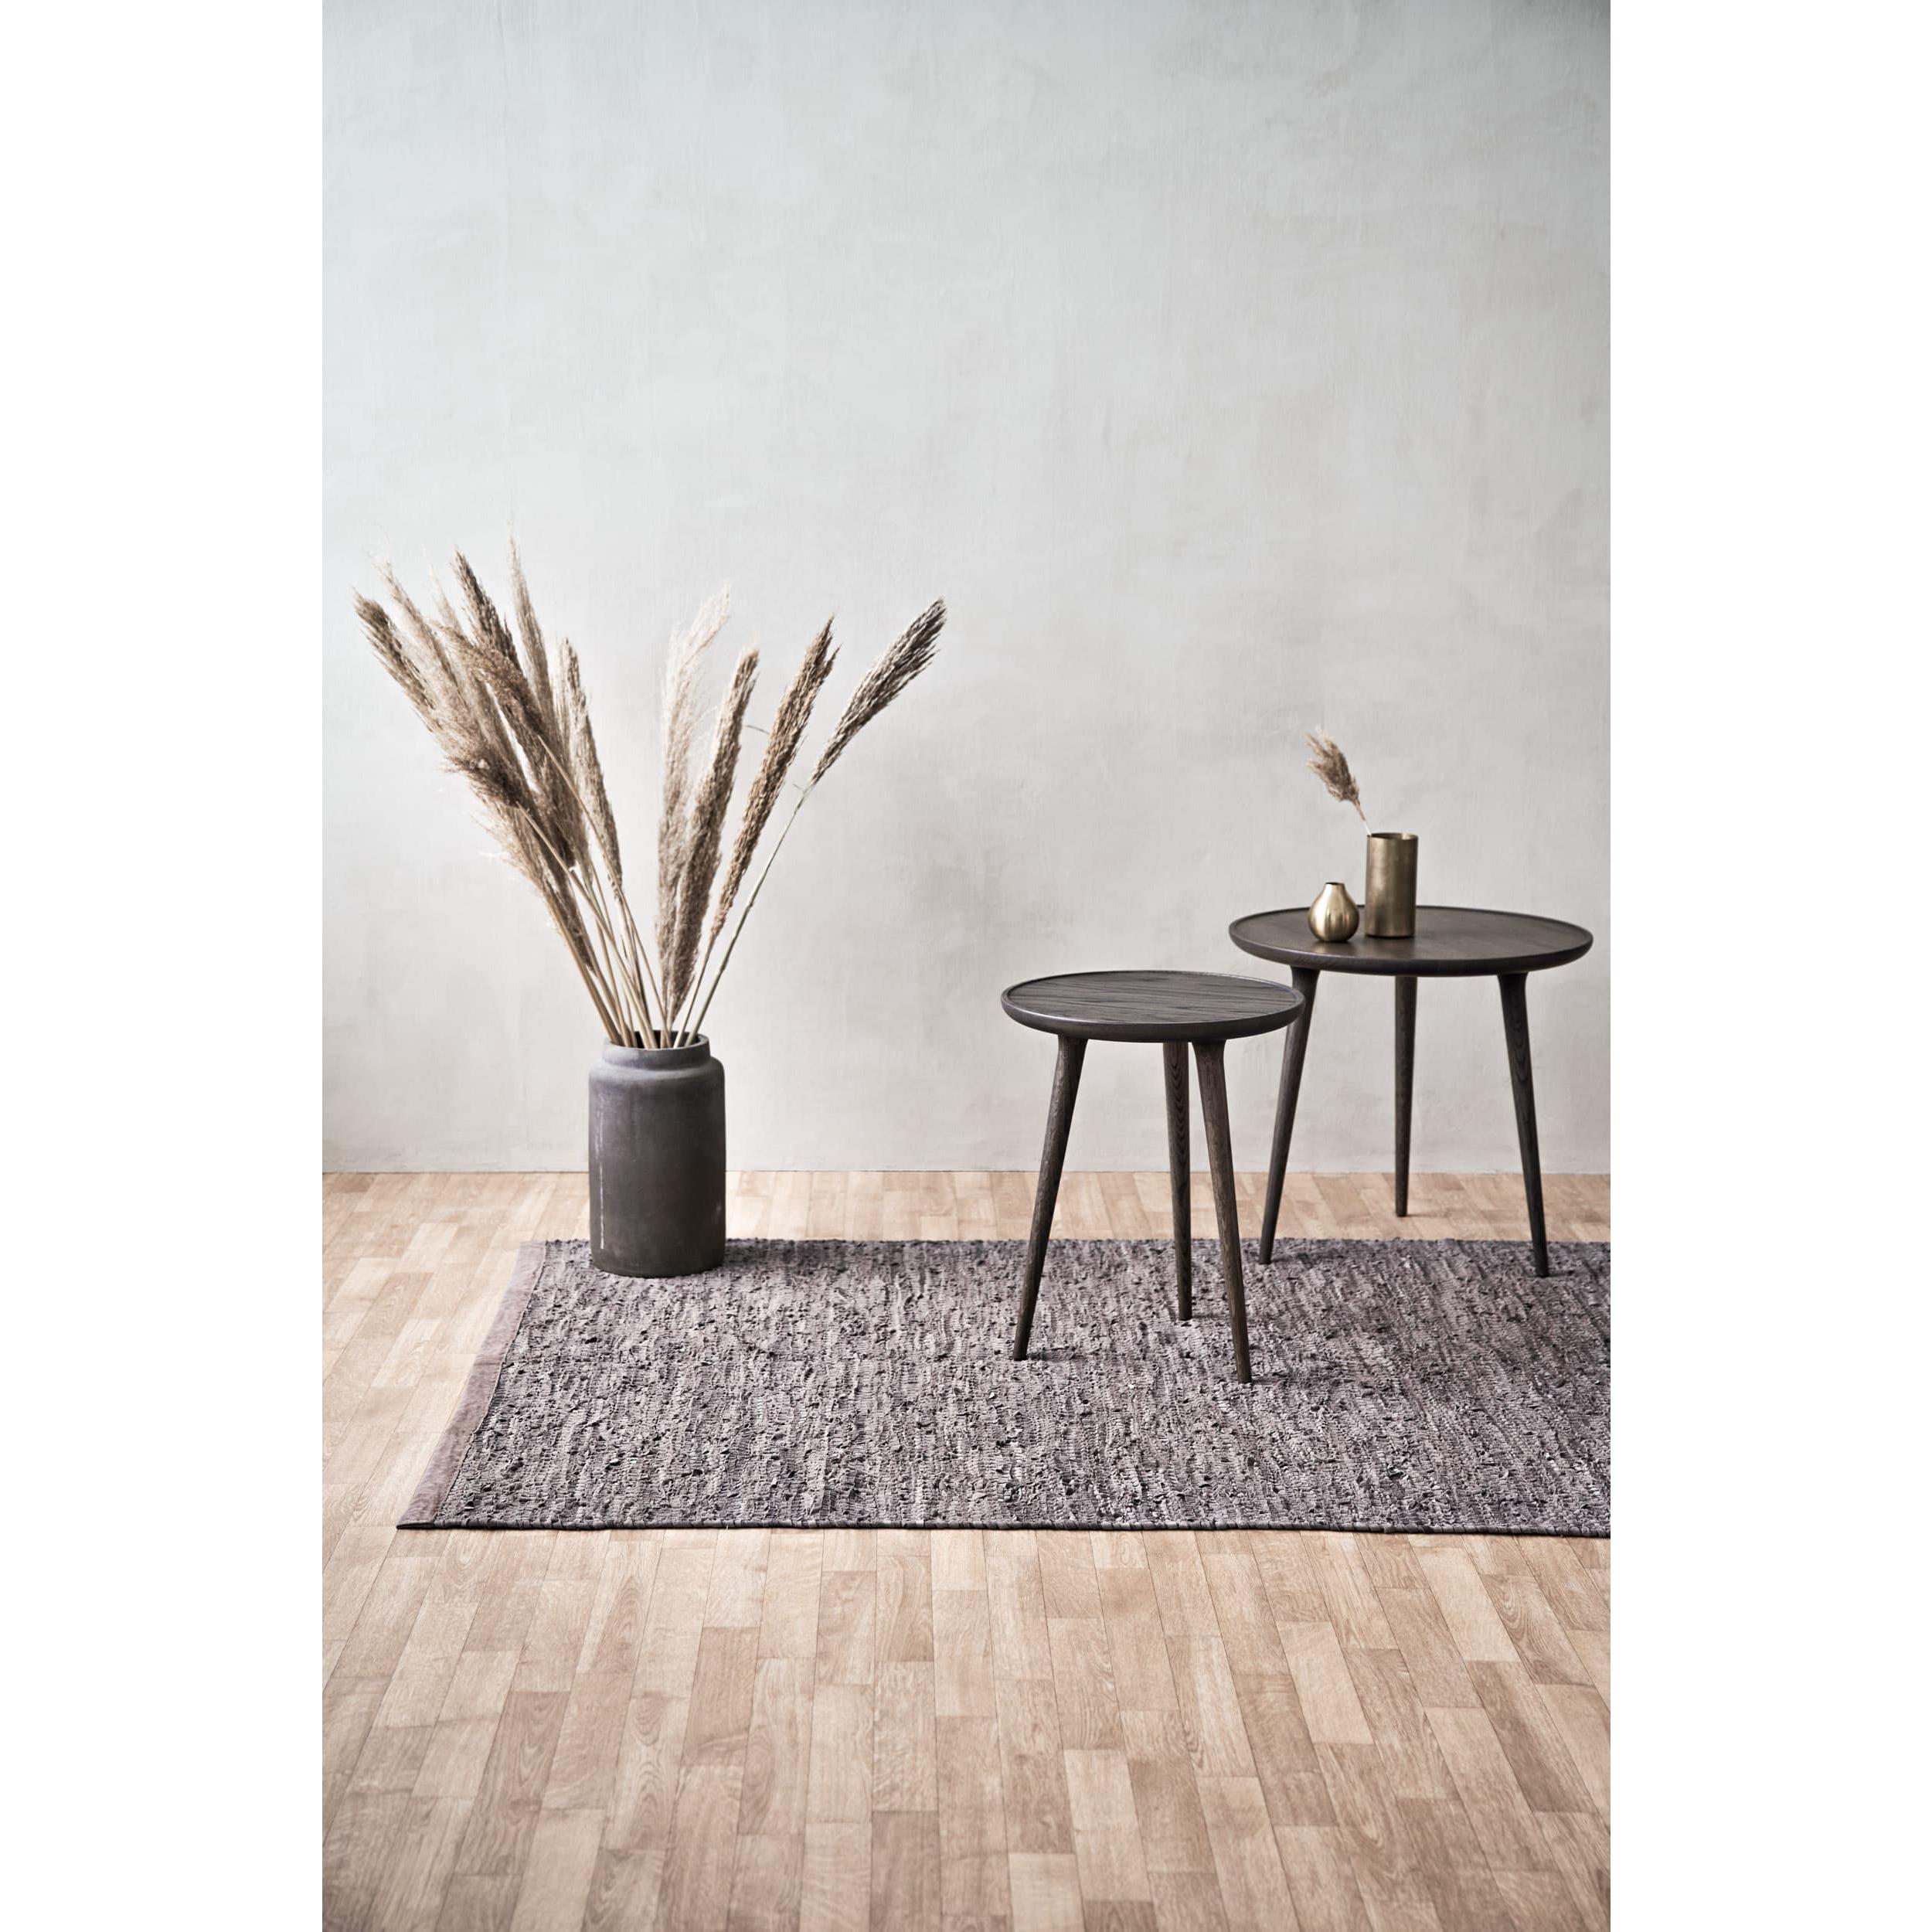 Rug Solid Bois de tapis en cuir, 60 x 90 cm